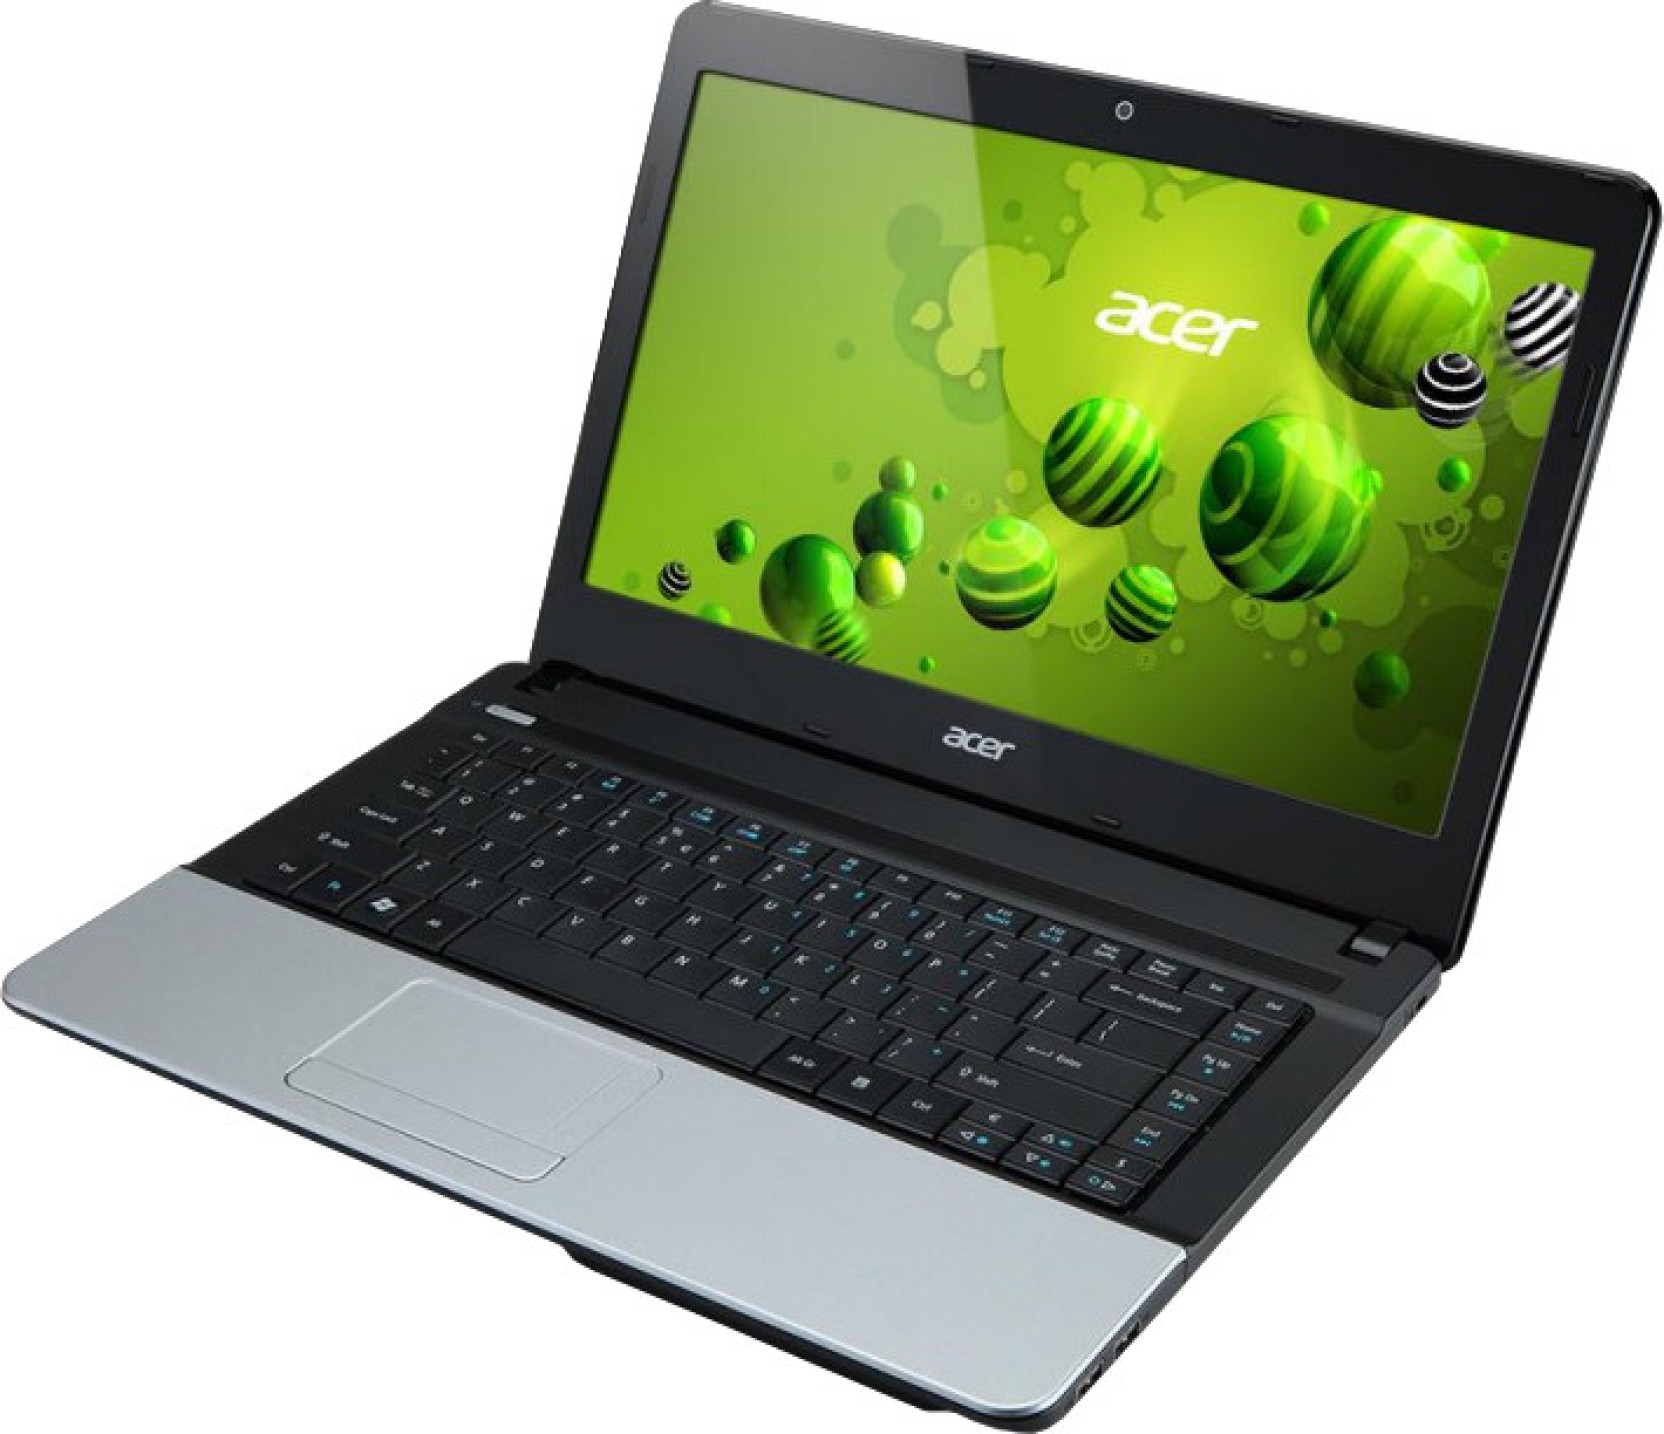 Acer 003. Acer Aspire e1. Acer Aspire v5-573g. Acer Aspire 3 e1. Ноутбук Асер e1-471.